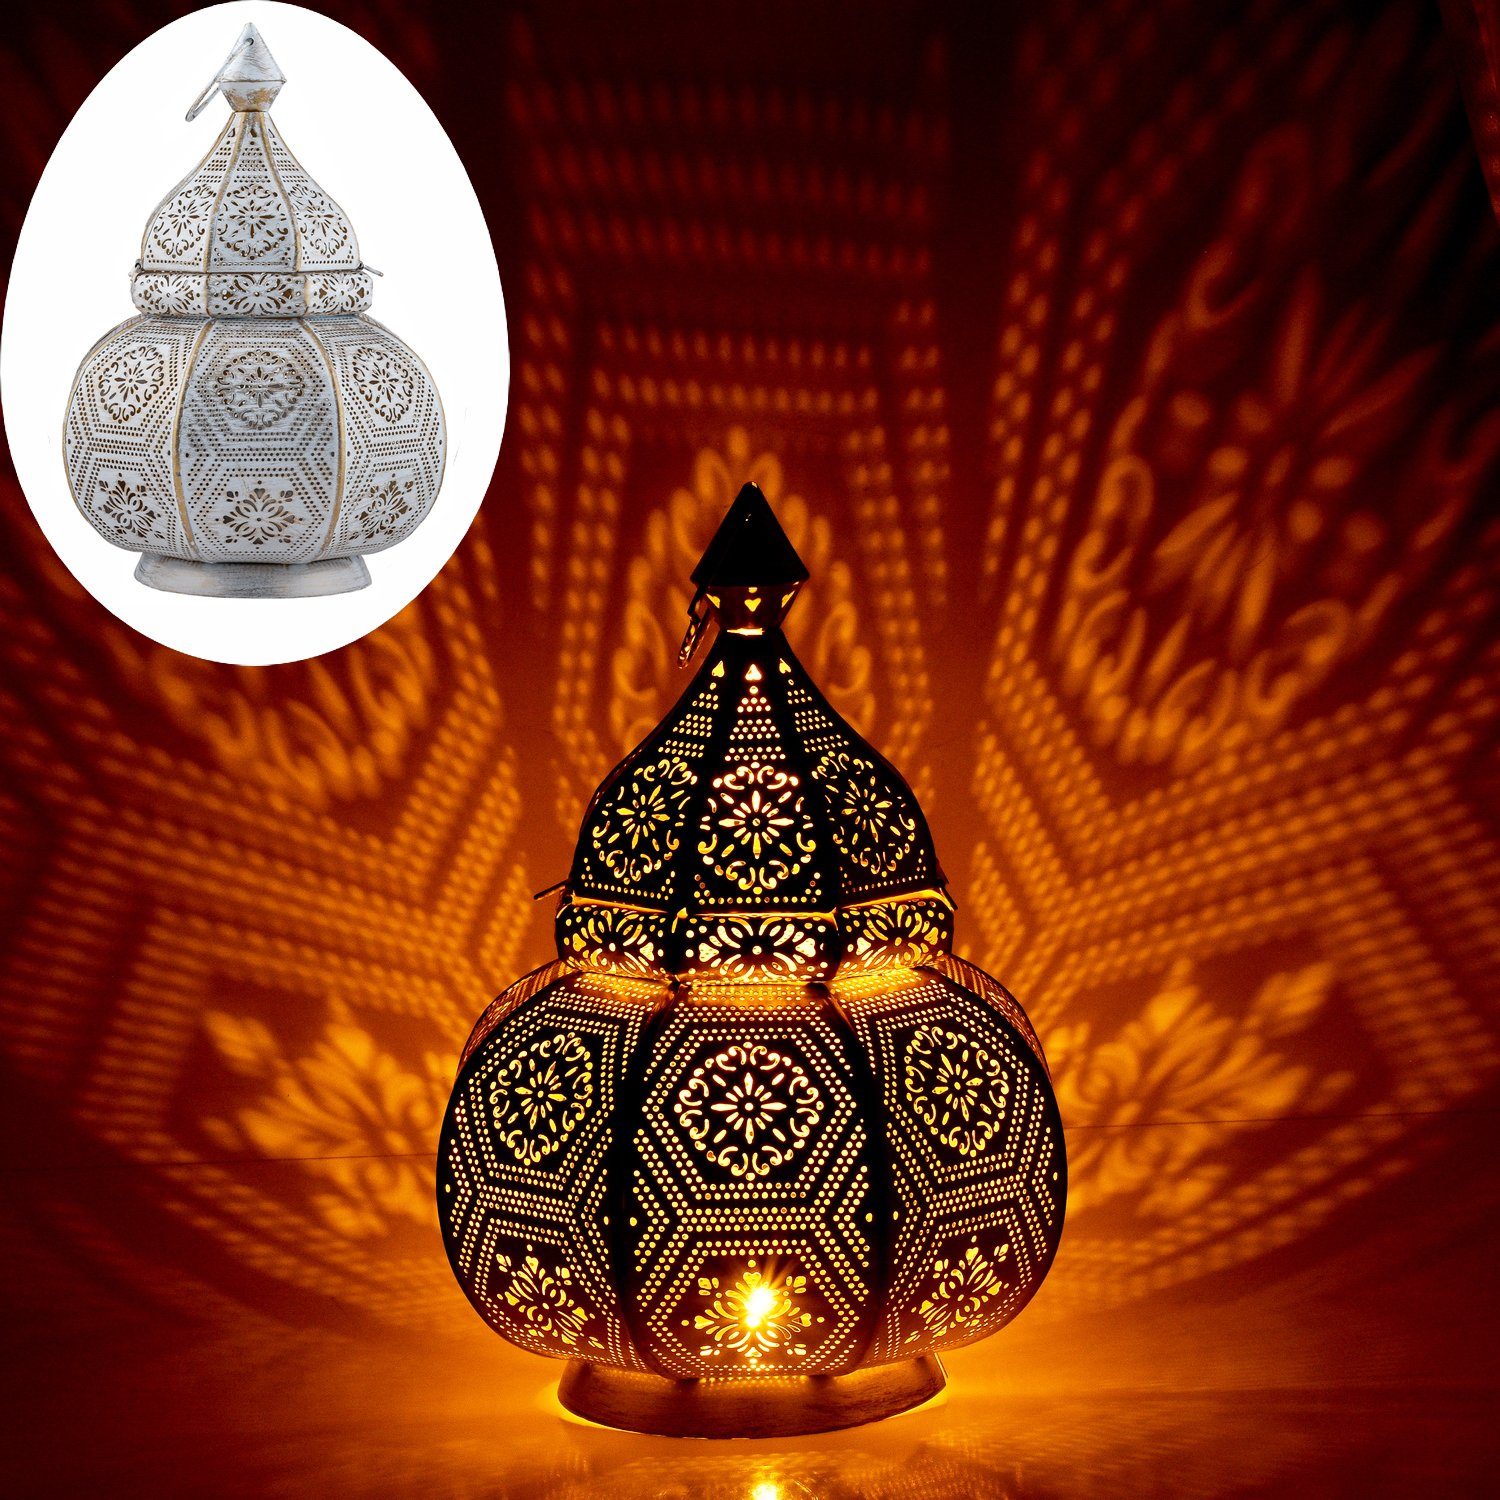 Marrakesch Orient & Mediterran Interior Windlicht Tischlampe Laterne Mahana, Leuchte, Windlicht, Deko (1 St), Handarbeit